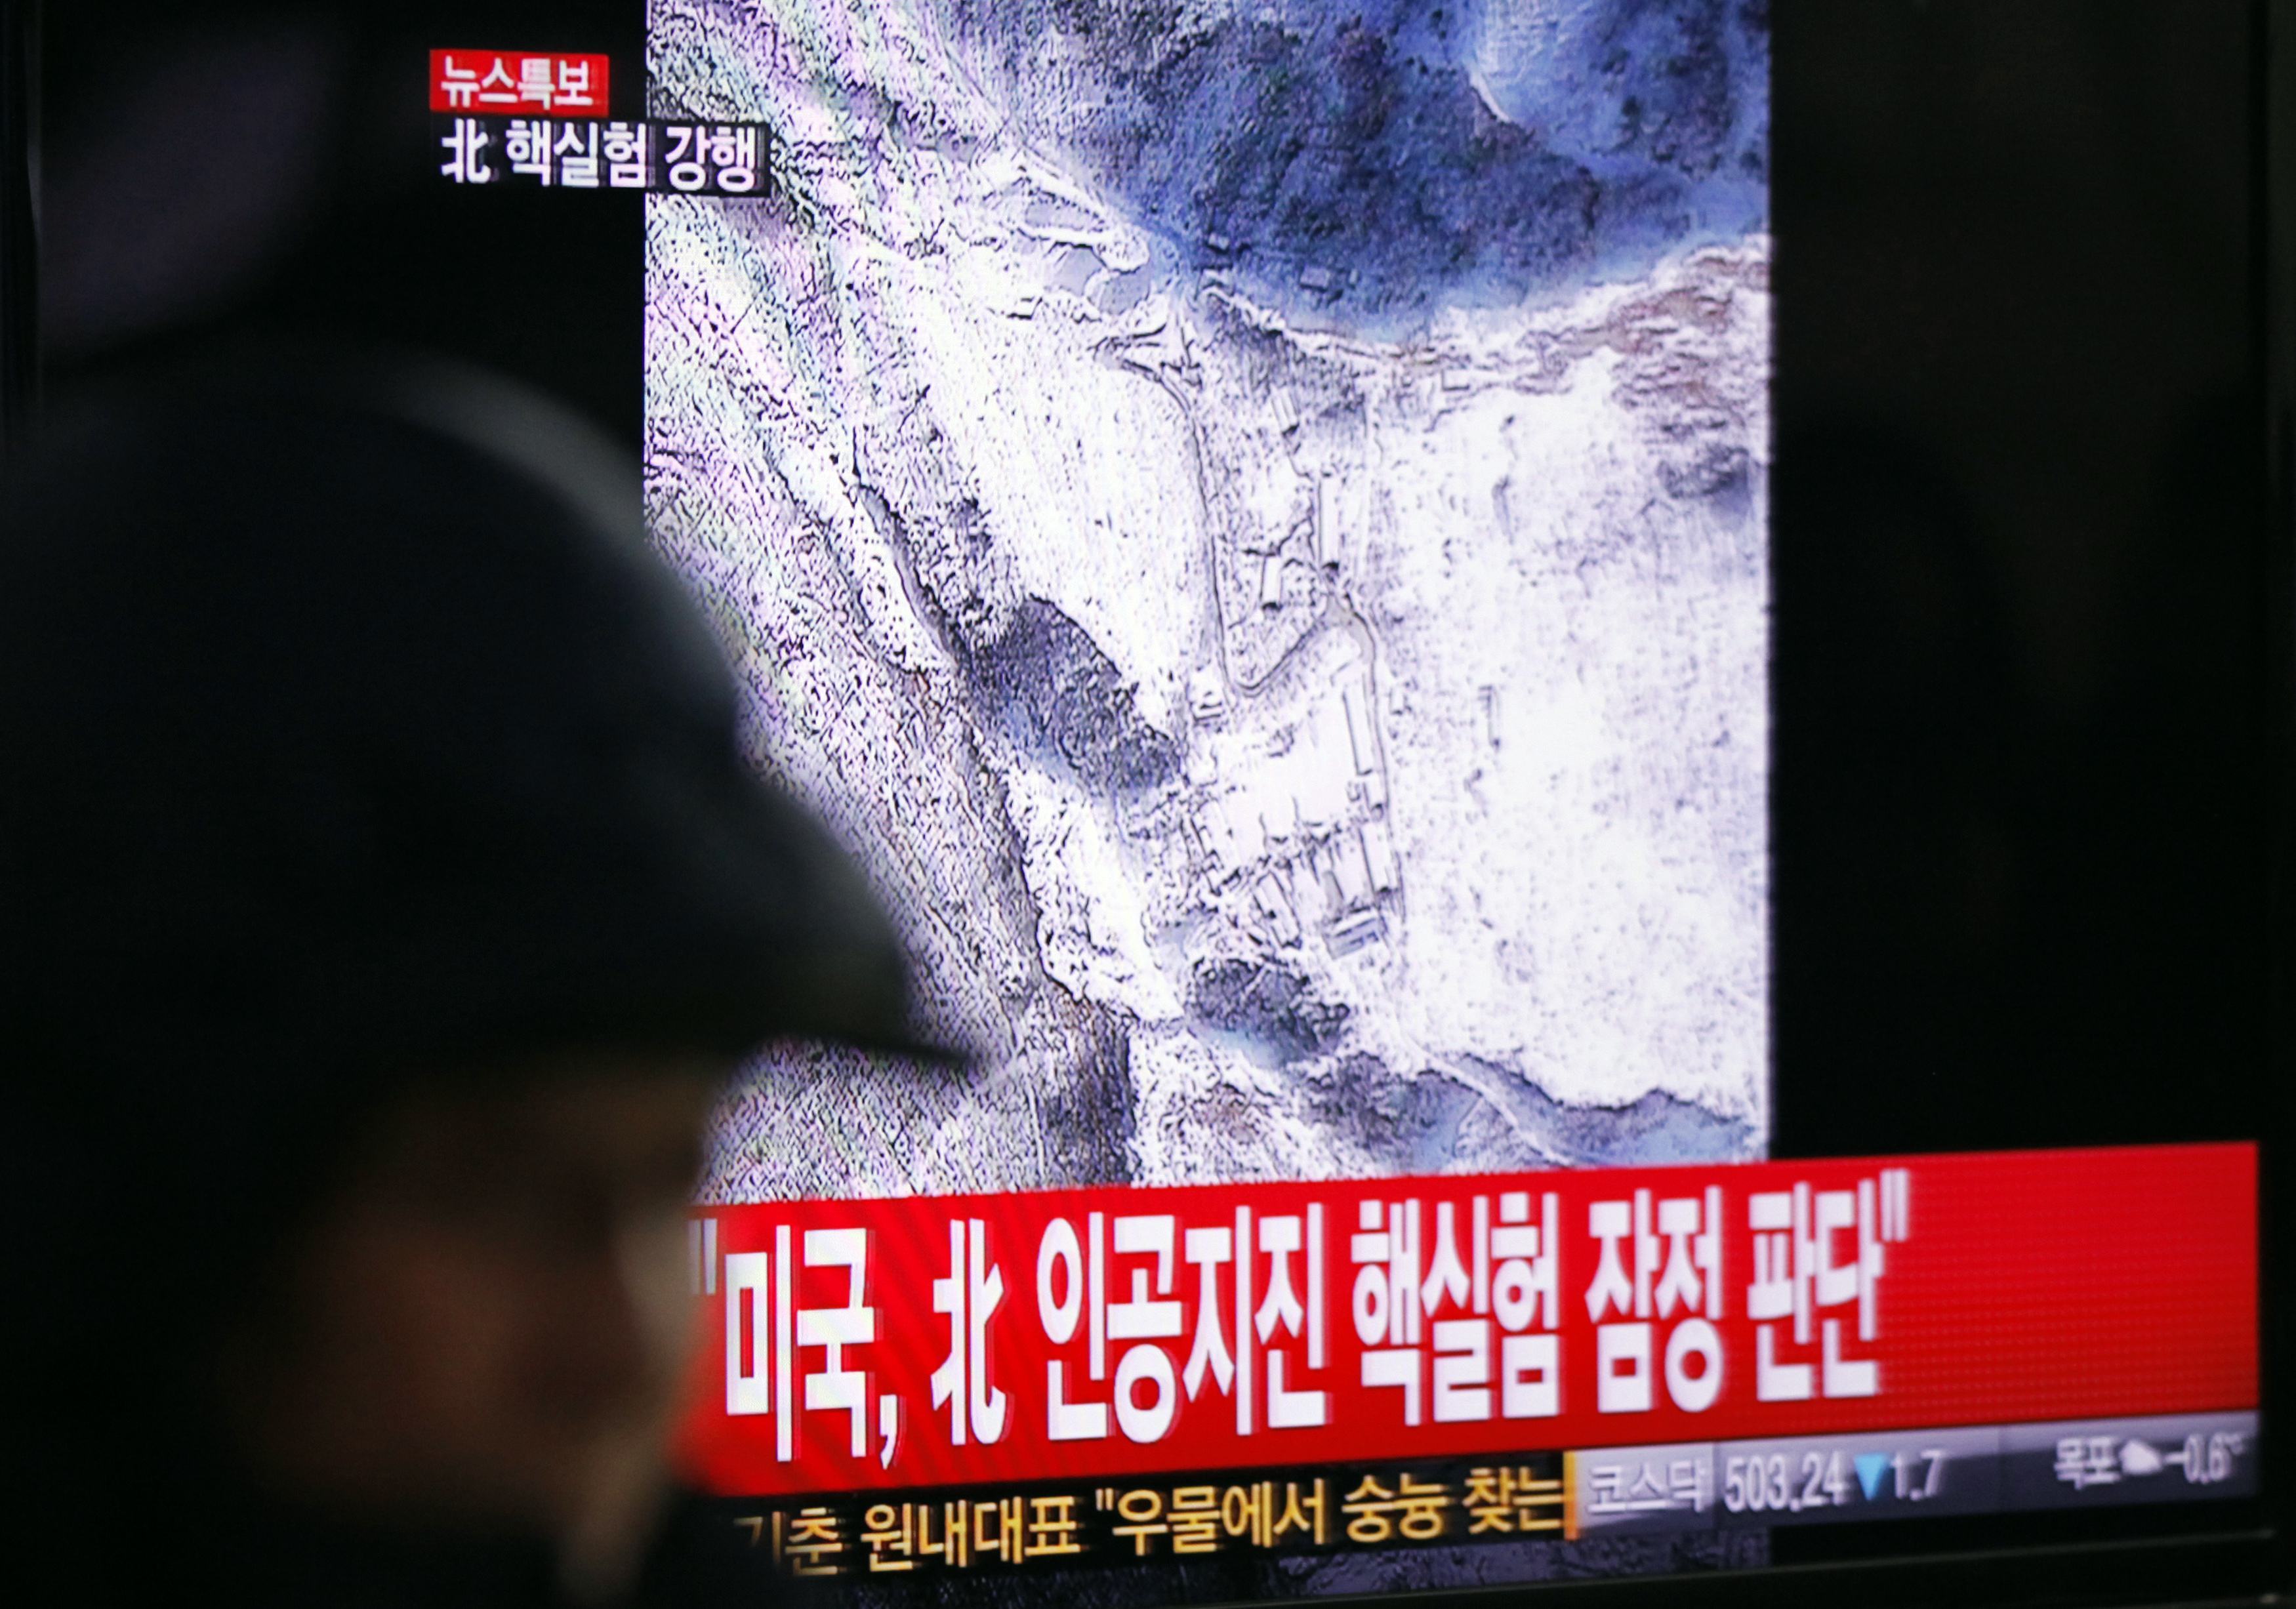 Σεισμός 4,9R στη Βόρεια Κορέα, φόβοι για νέα πυρηνική δοκιμή